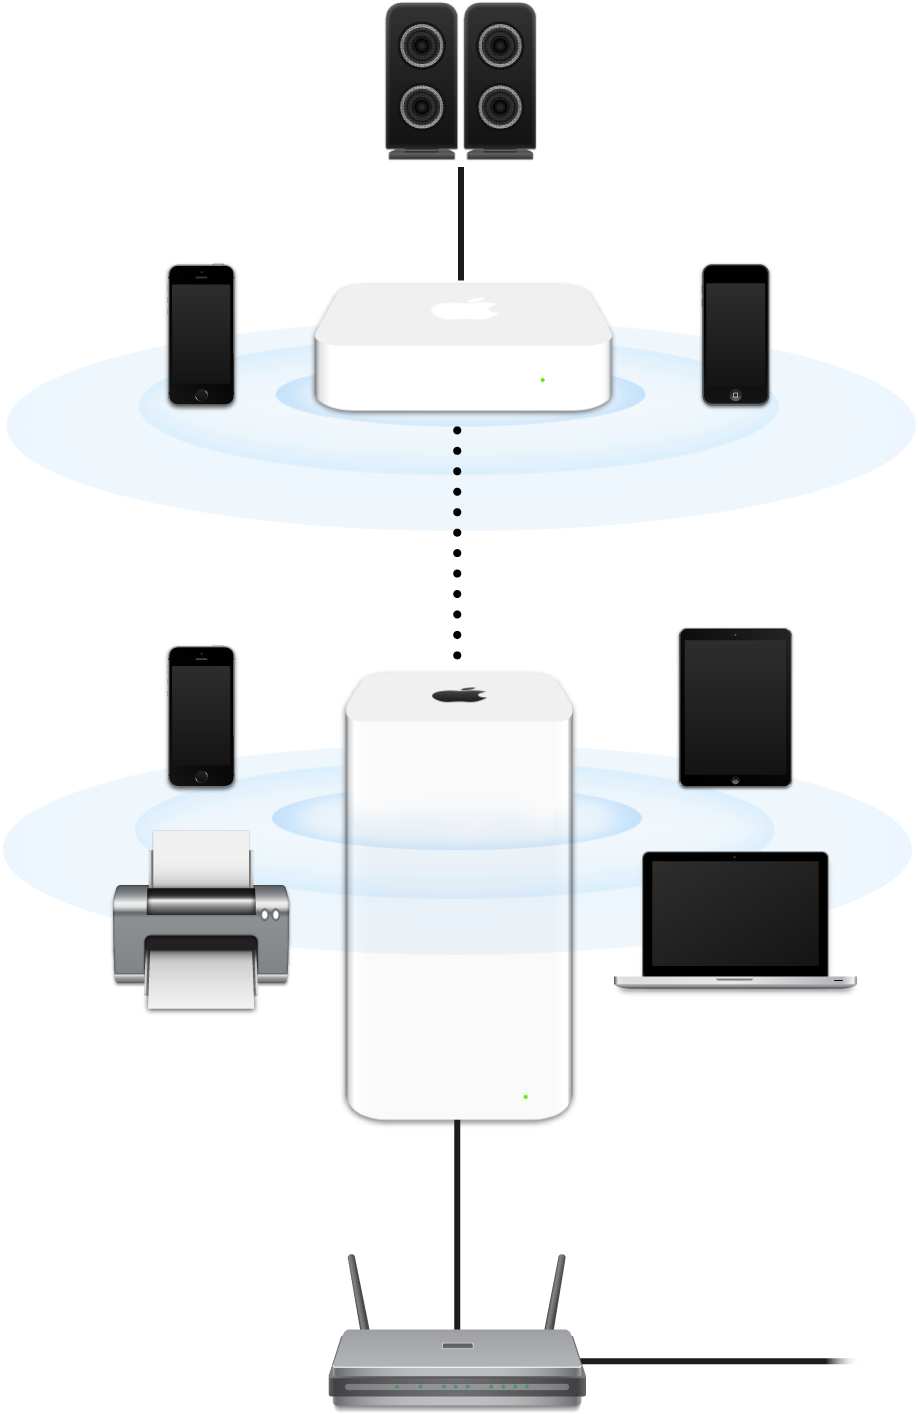 O rețea extinsă care include un dispozitiv AirPort Extreme și un dispozitiv AirPort Express, conectate la un modem și transmițând către diverse dispozitive.